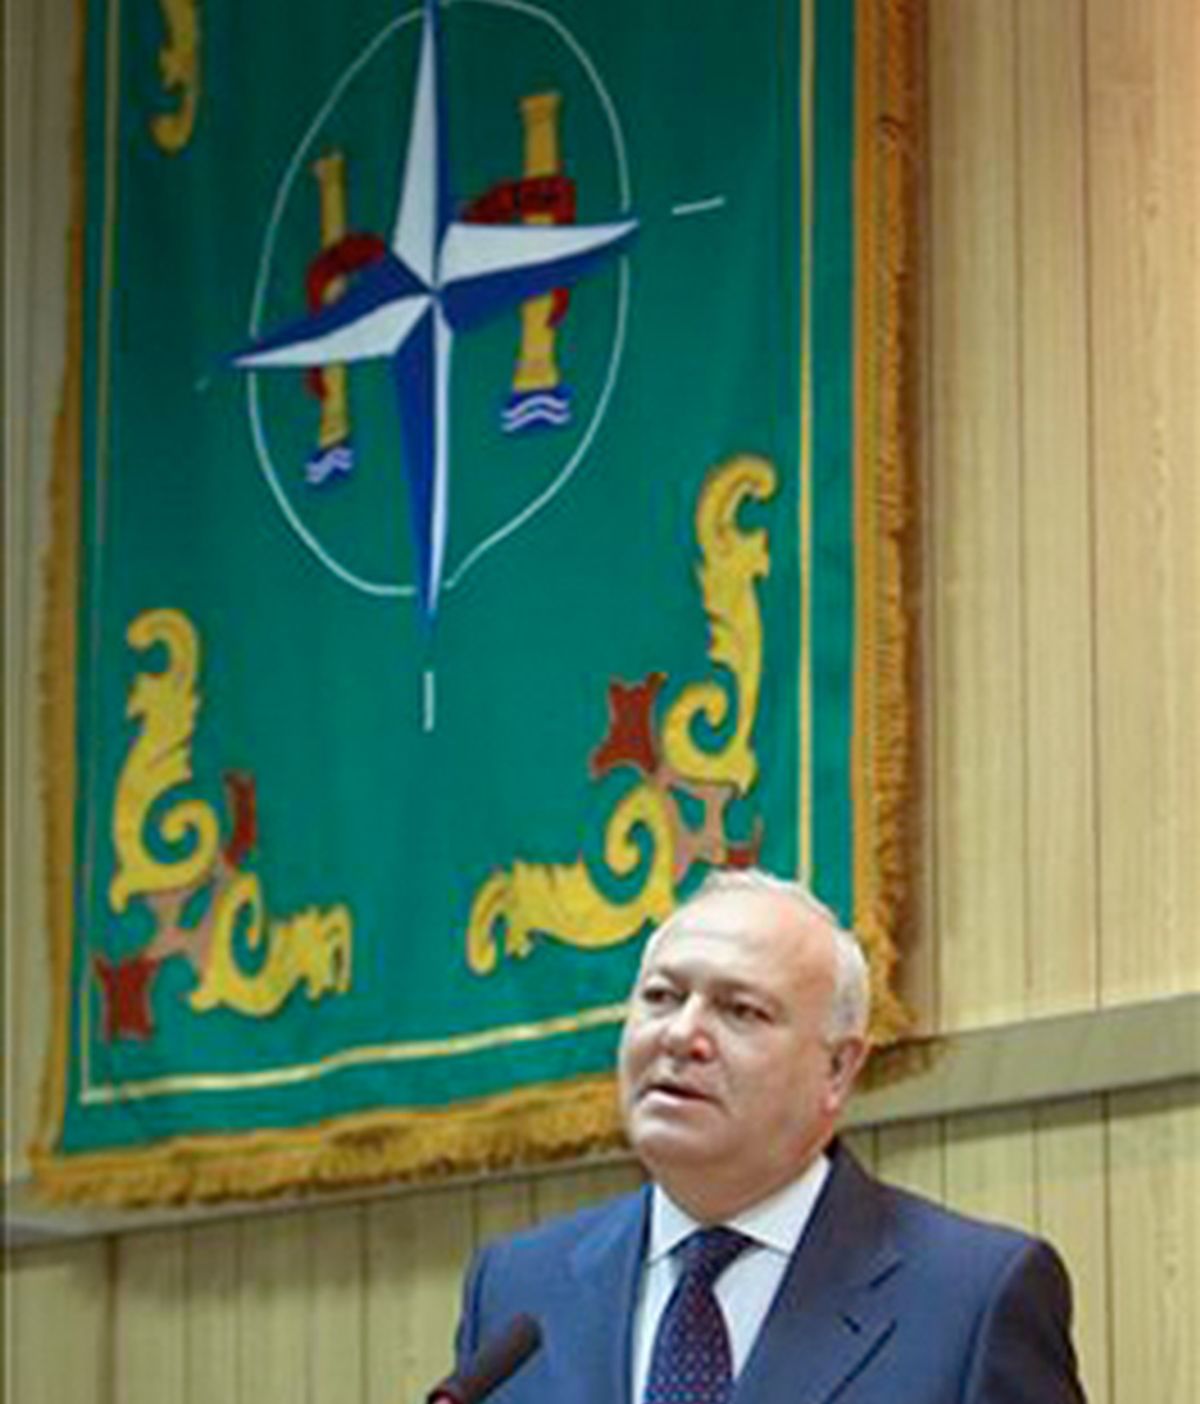 El ex ministro Moratinos, en Retamares. Foto: MDE.